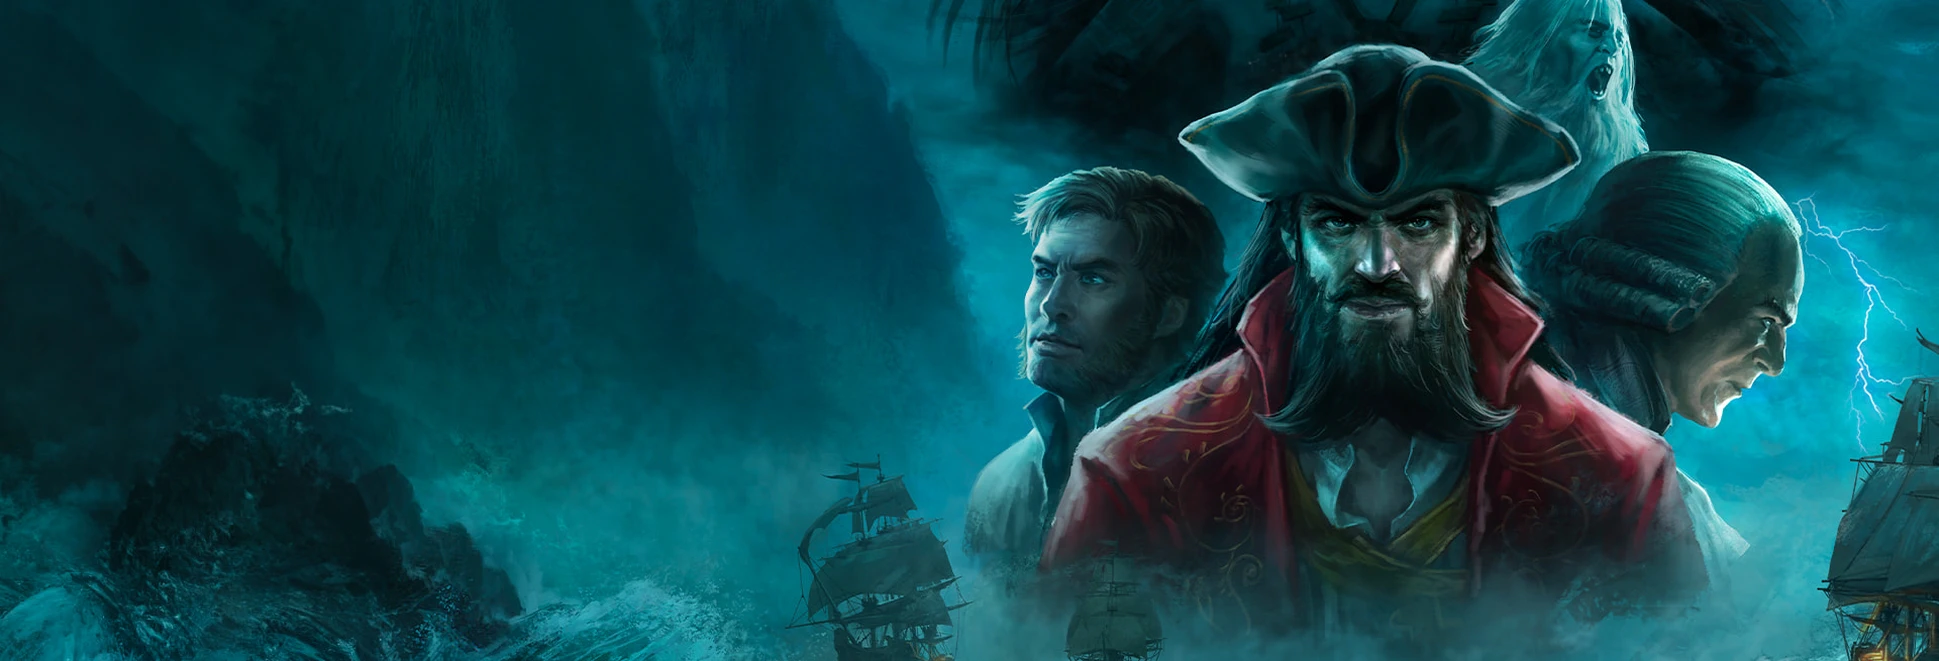 Анонсирована Flint: The Treasure of Oblivion — тактическая RPG о «настоящих пиратах»